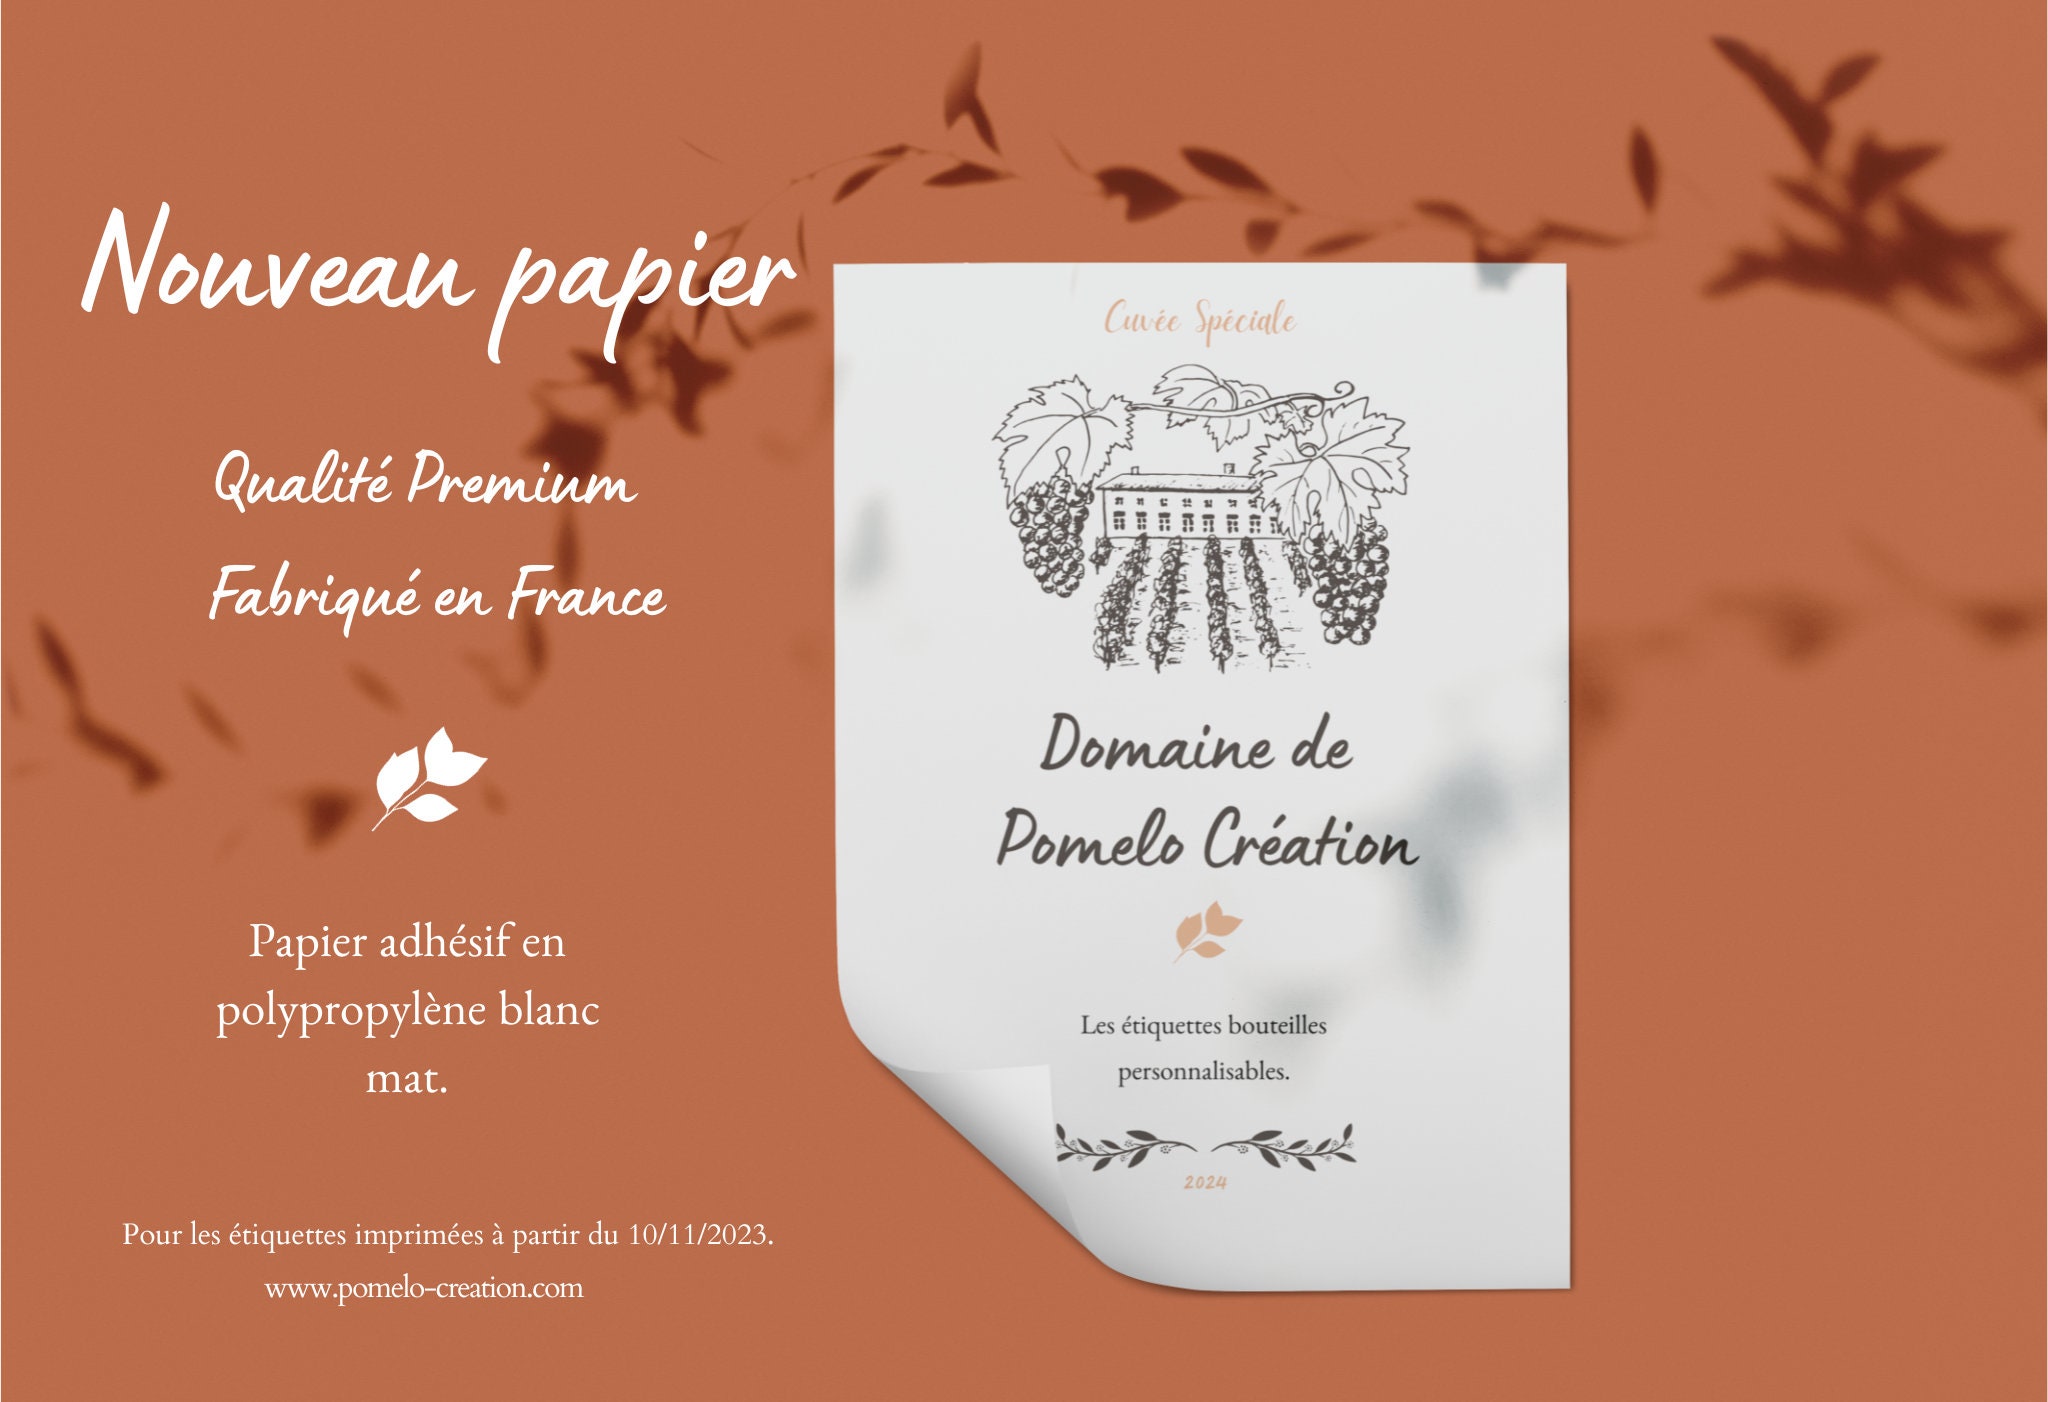 Etiquette Bouteille Personnalisable - Château Nouvelle - Pomelo Création®